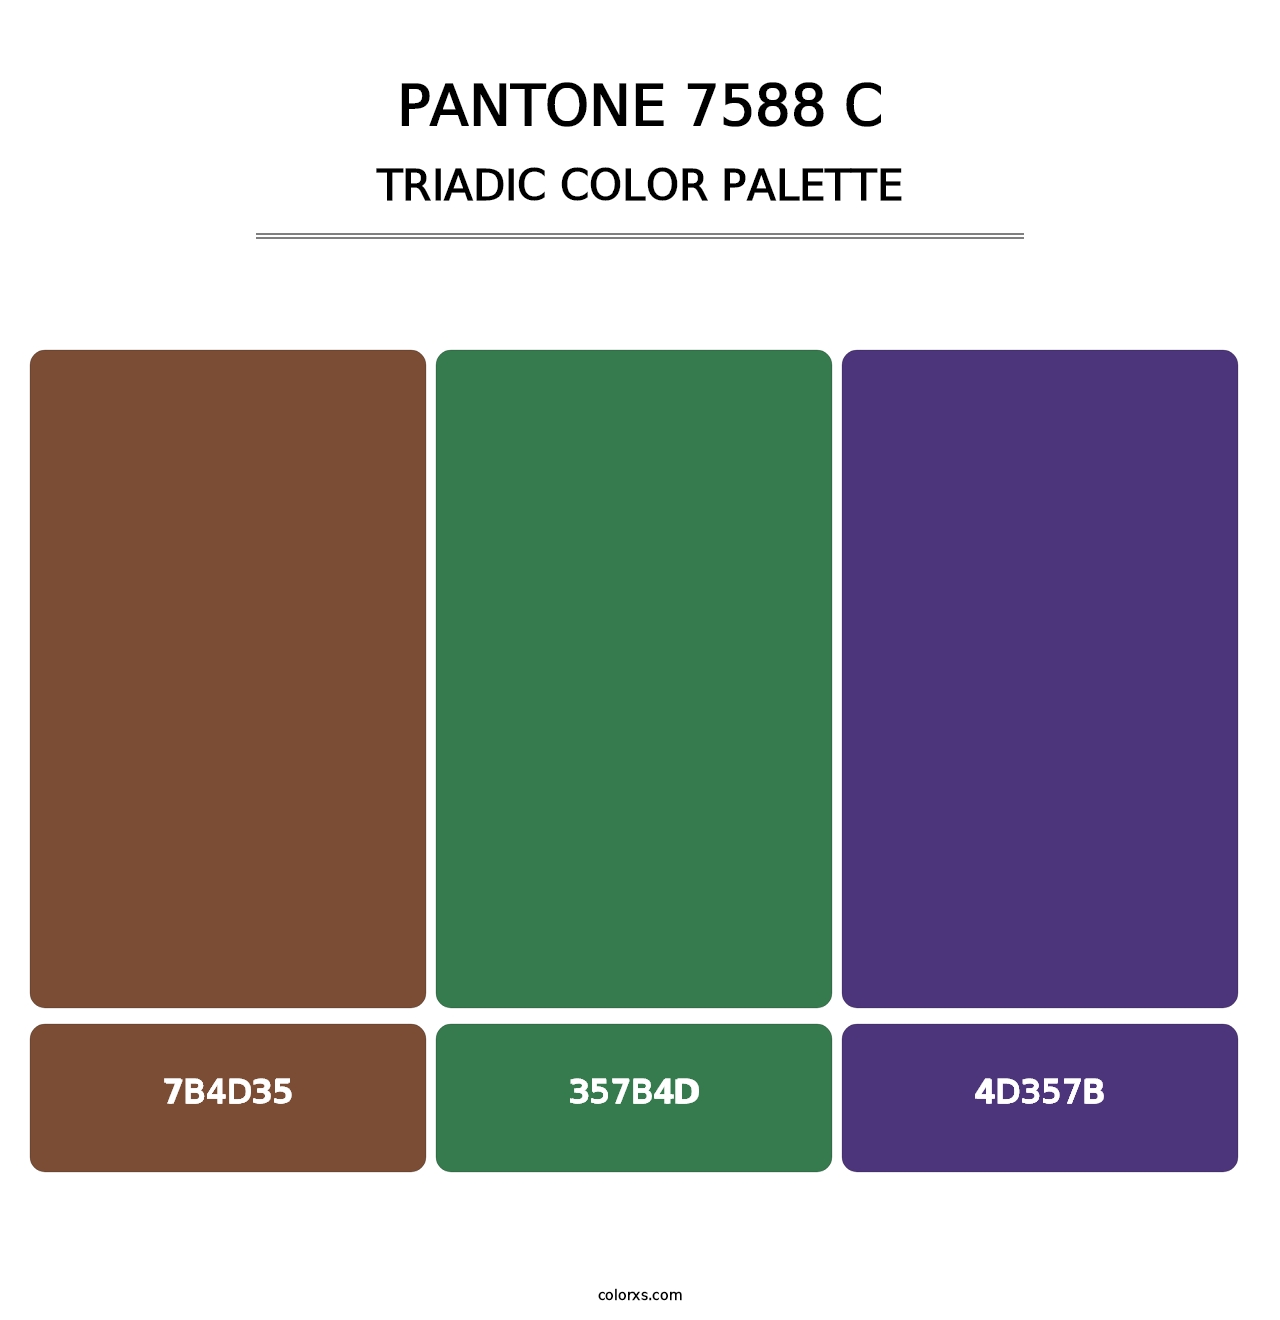 PANTONE 7588 C - Triadic Color Palette